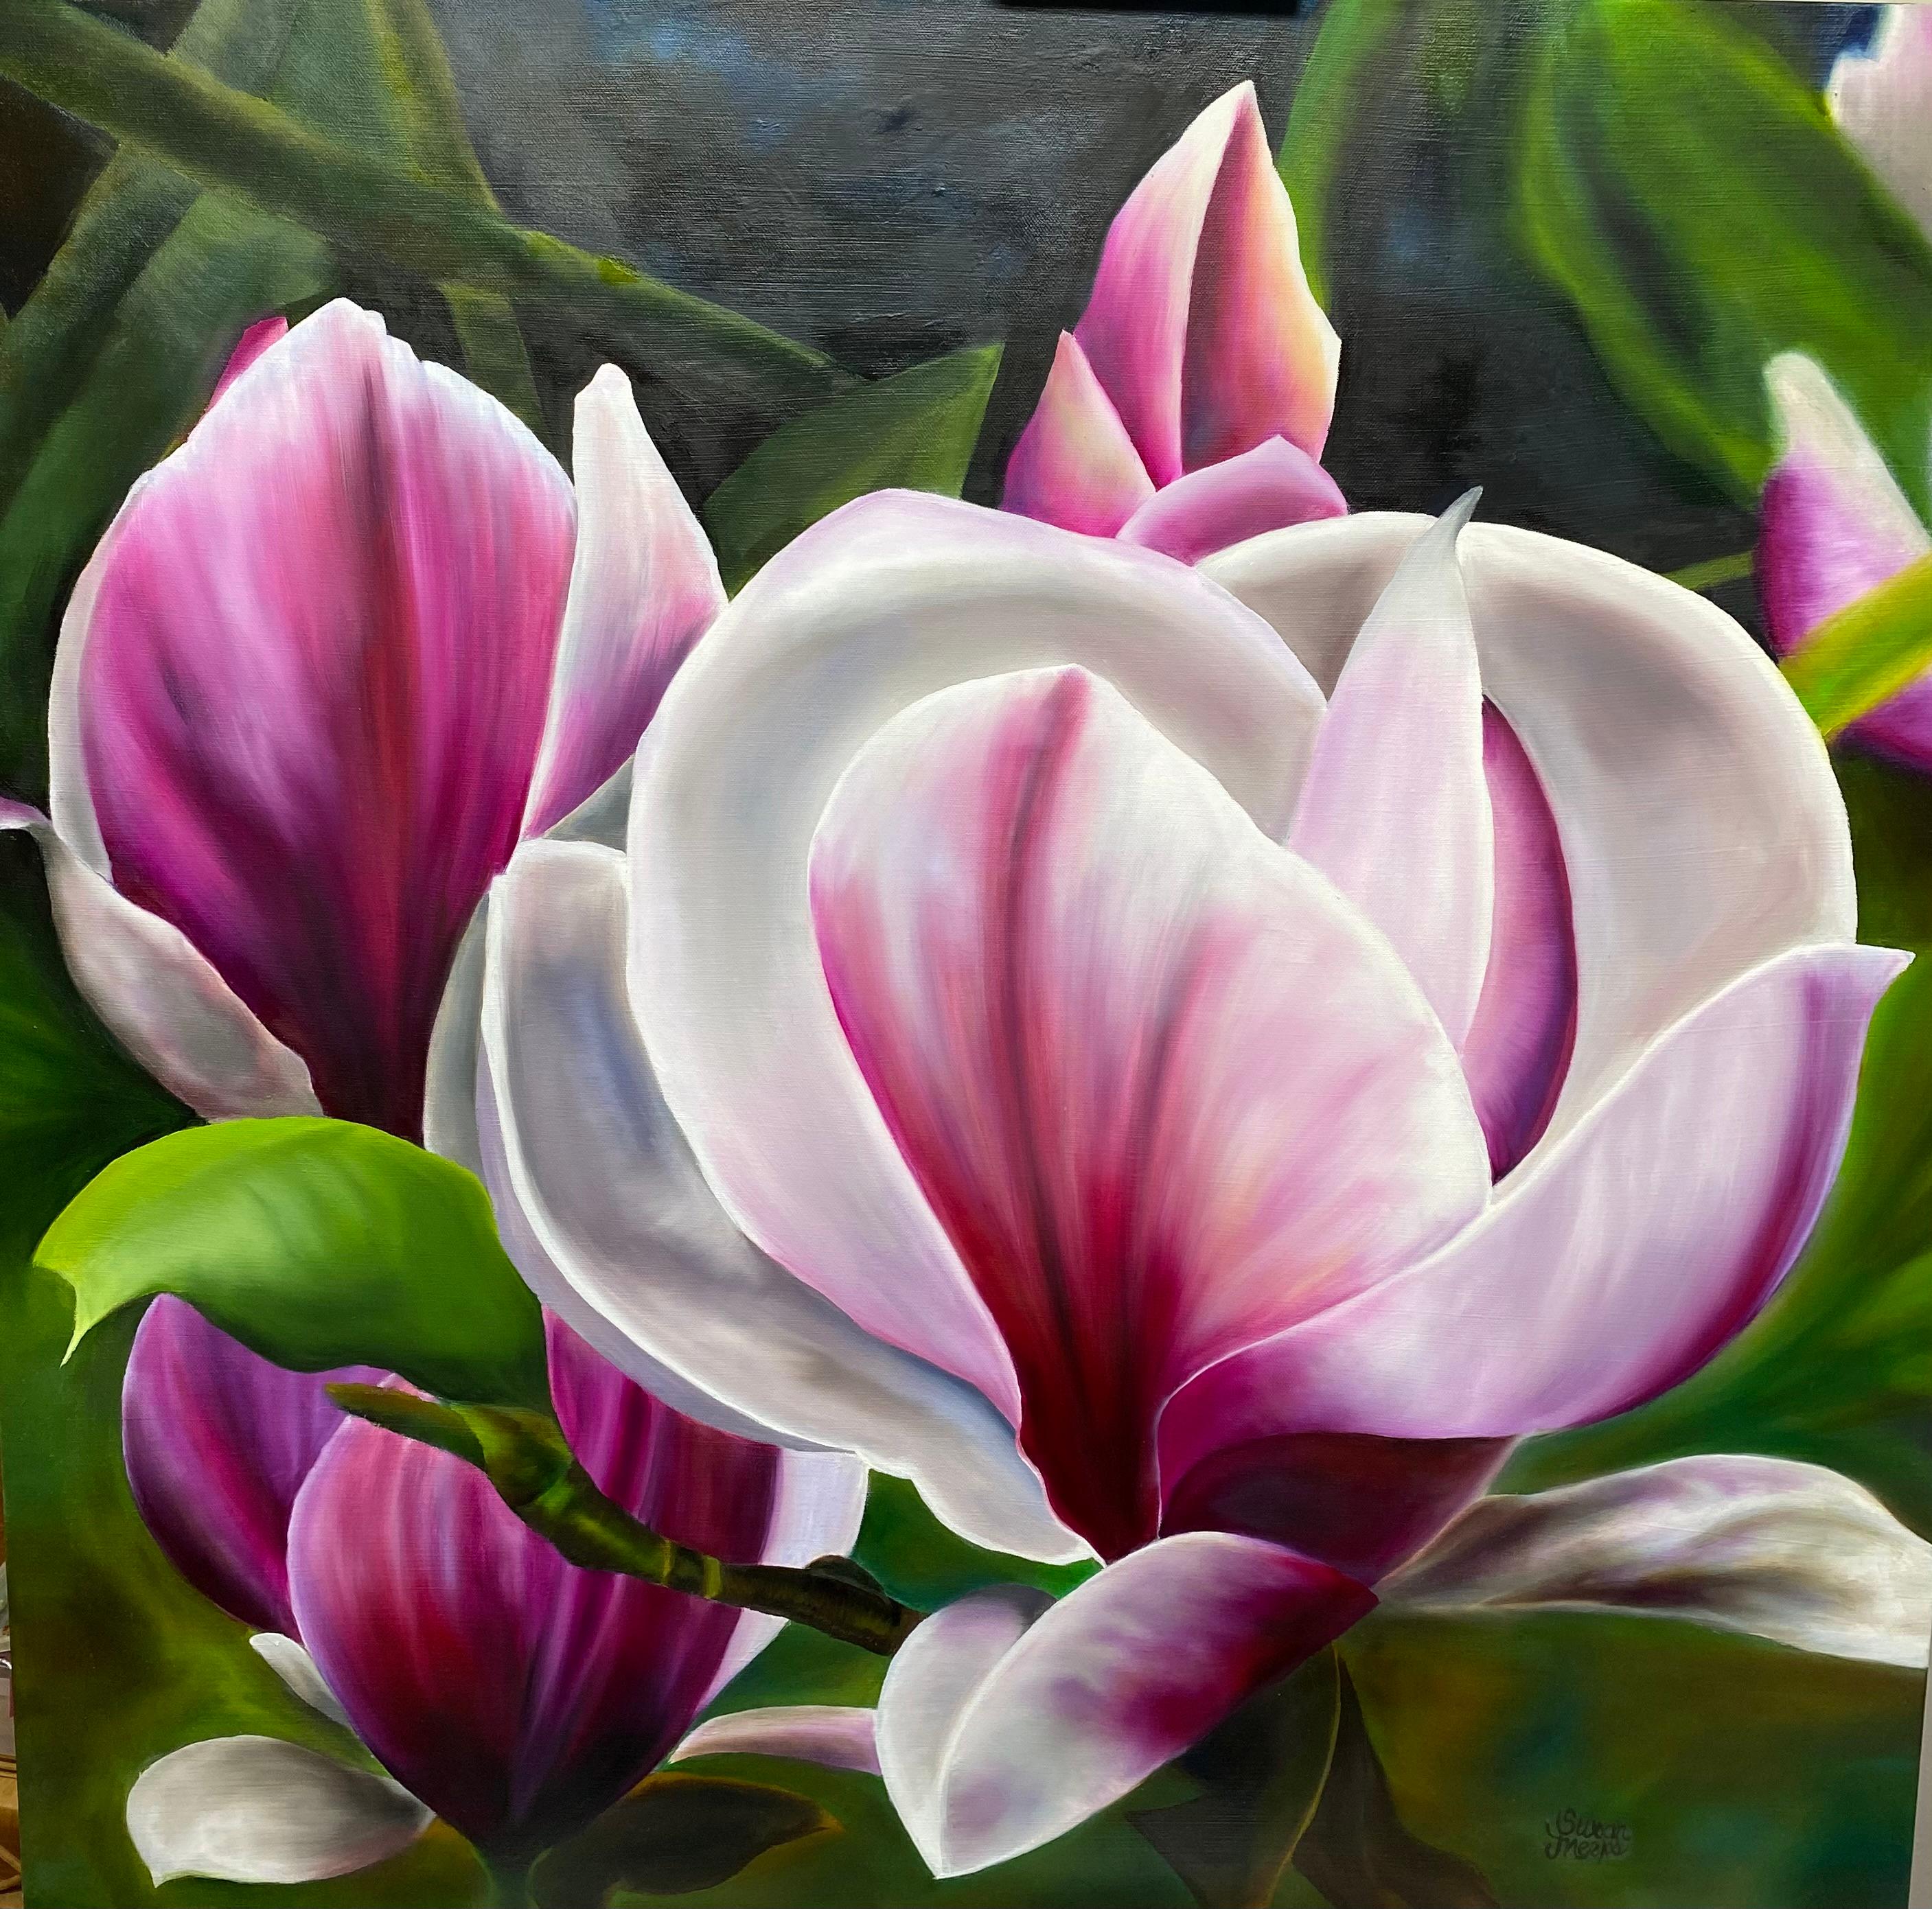 Landscape Painting Susan Meeks - Magenta Magnolia  Réalisme 36 x 36 Huile  Canvas Gallery Wrapped  Peinture florale 